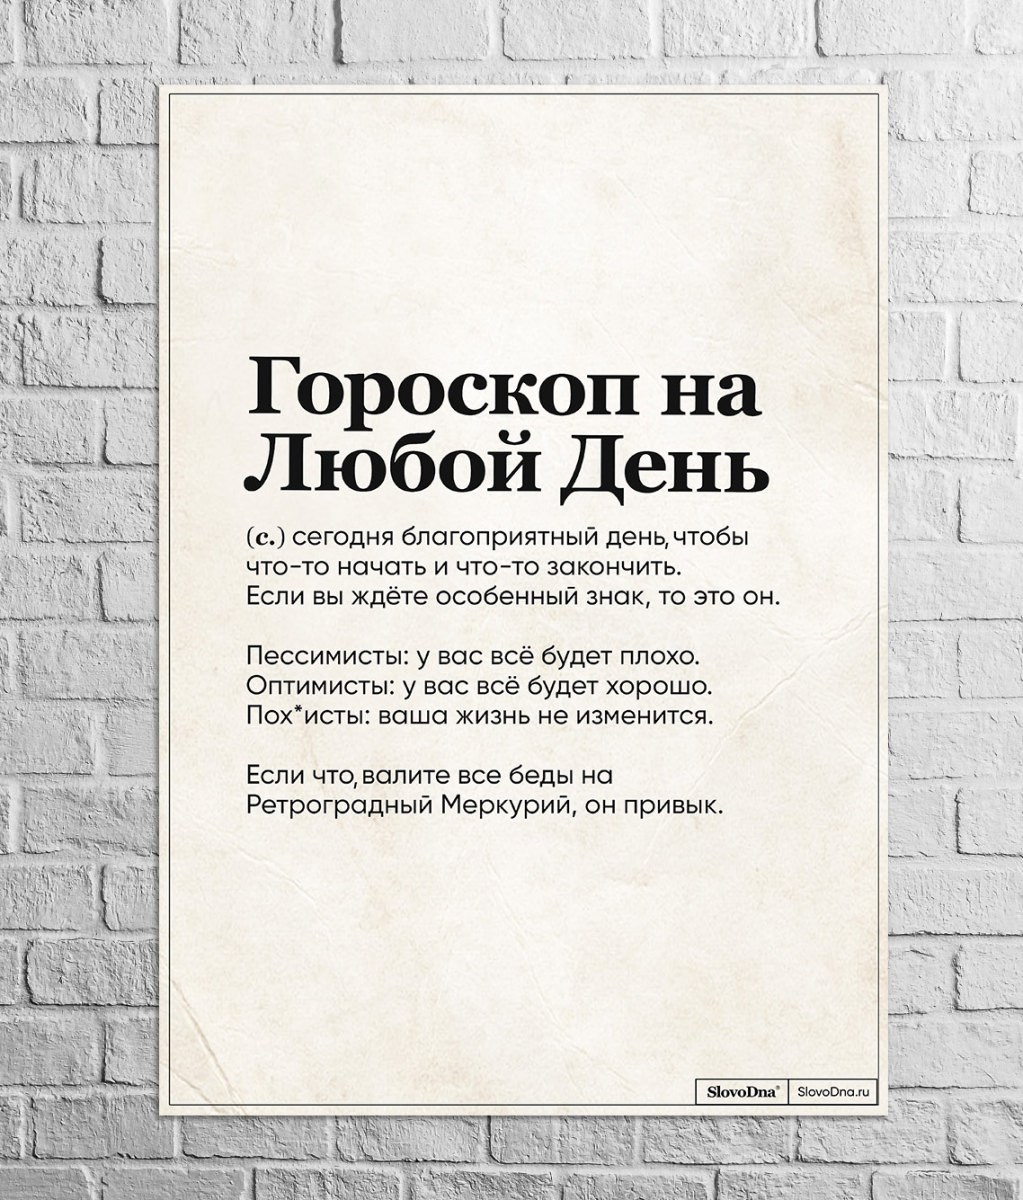 Постер A3 "Гороскоп на каждый день" by SlovoDna®